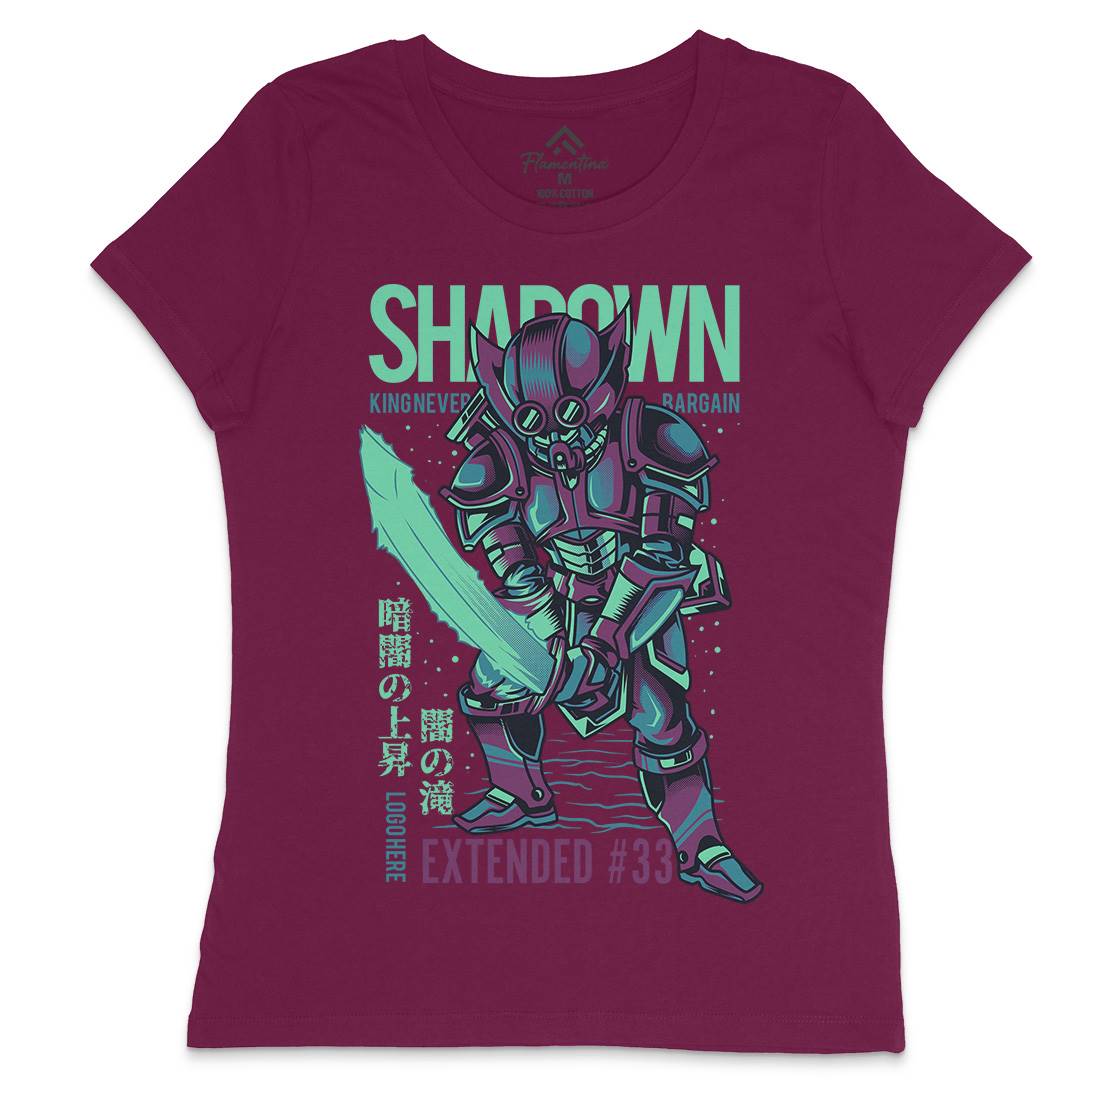 Shadown Knight Womens Crew Neck T-Shirt Warriors D812